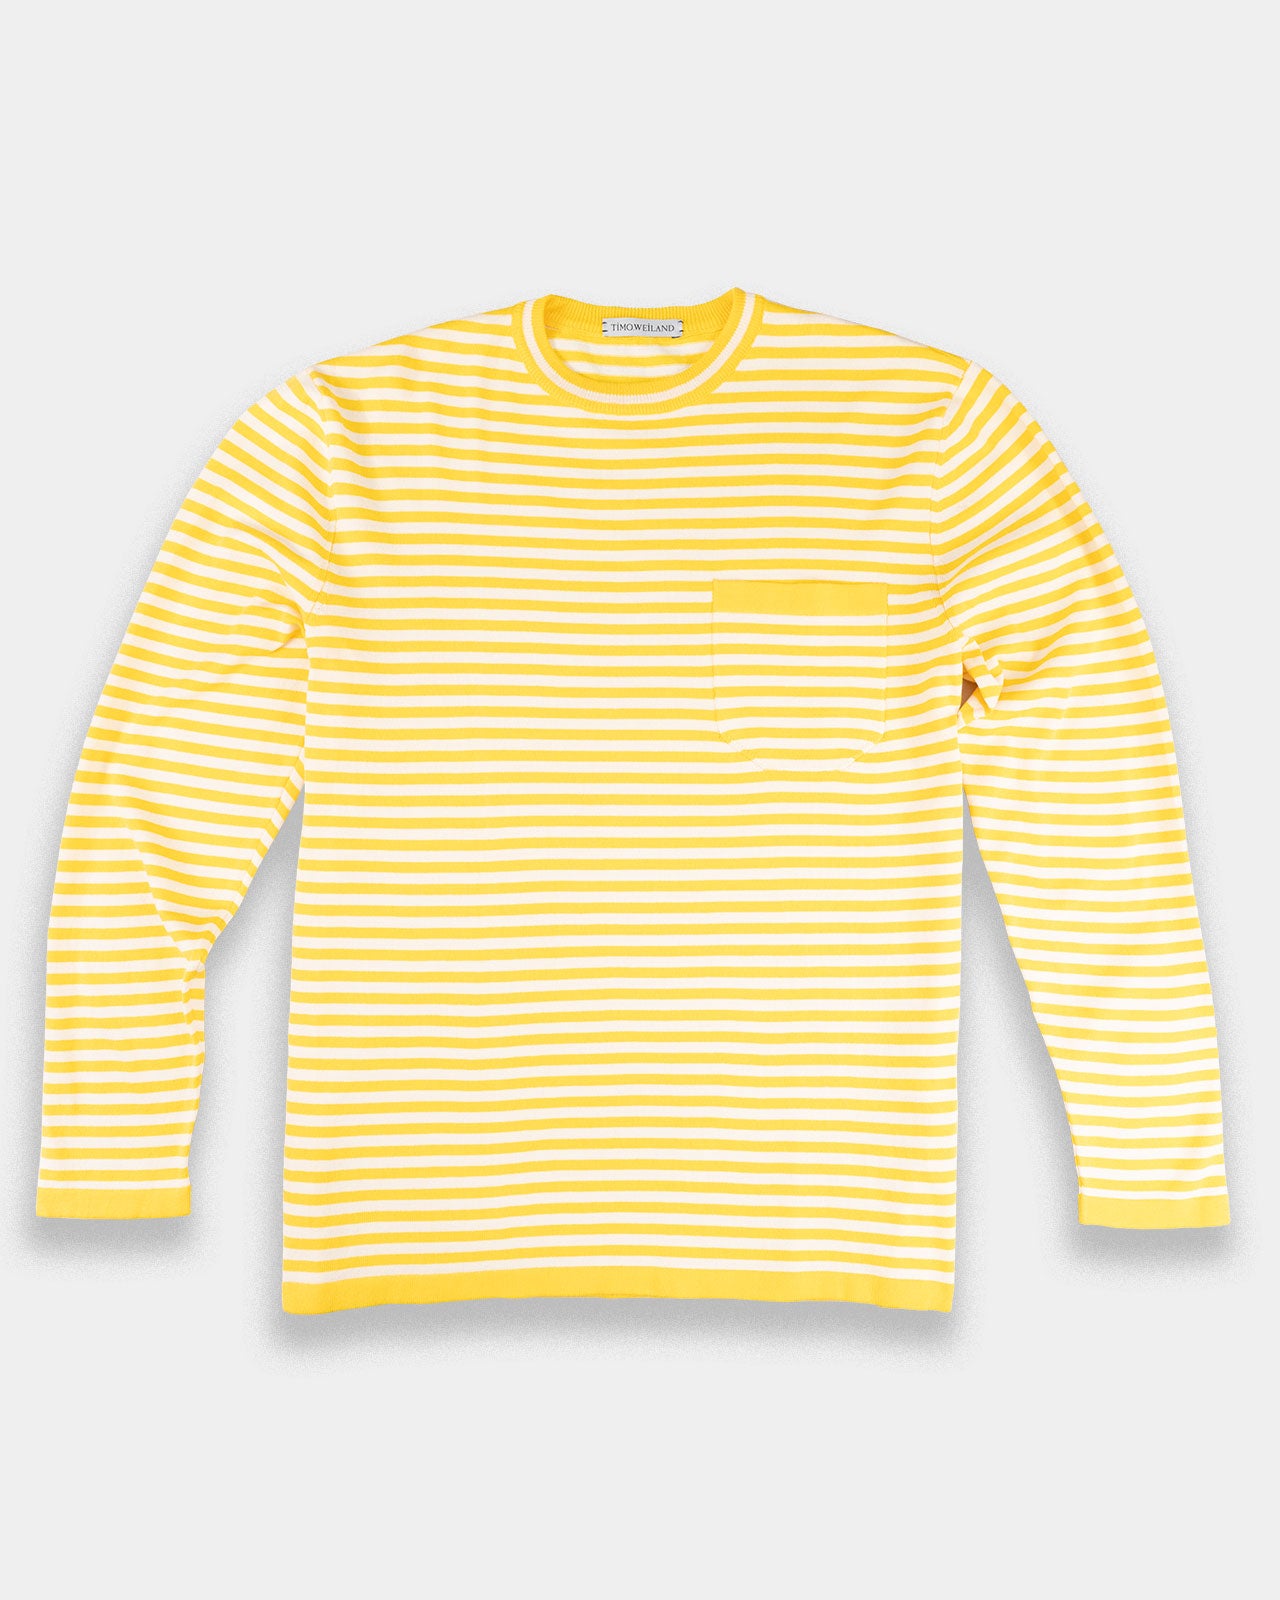 Capri Yellow Striped Cotton Crew